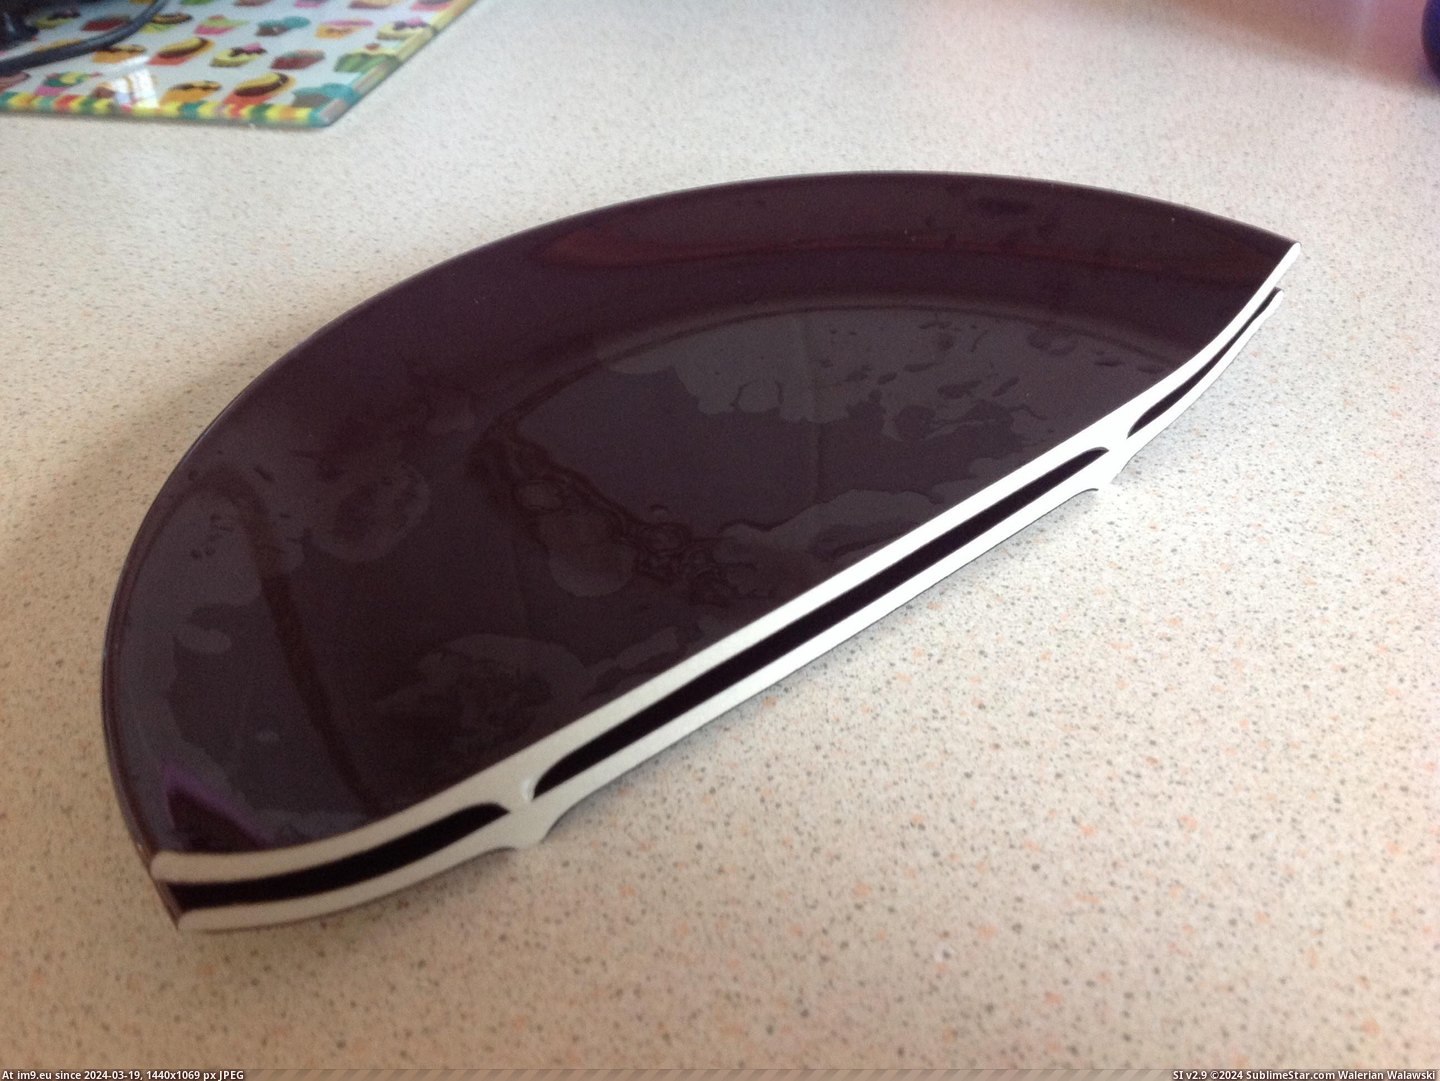 #Broke #Plate #Washing #Dropped [Mildlyinteresting] Dropped a plate when washing up - it broke exactly in half Pic. (Bild von album My r/MILDLYINTERESTING favs))